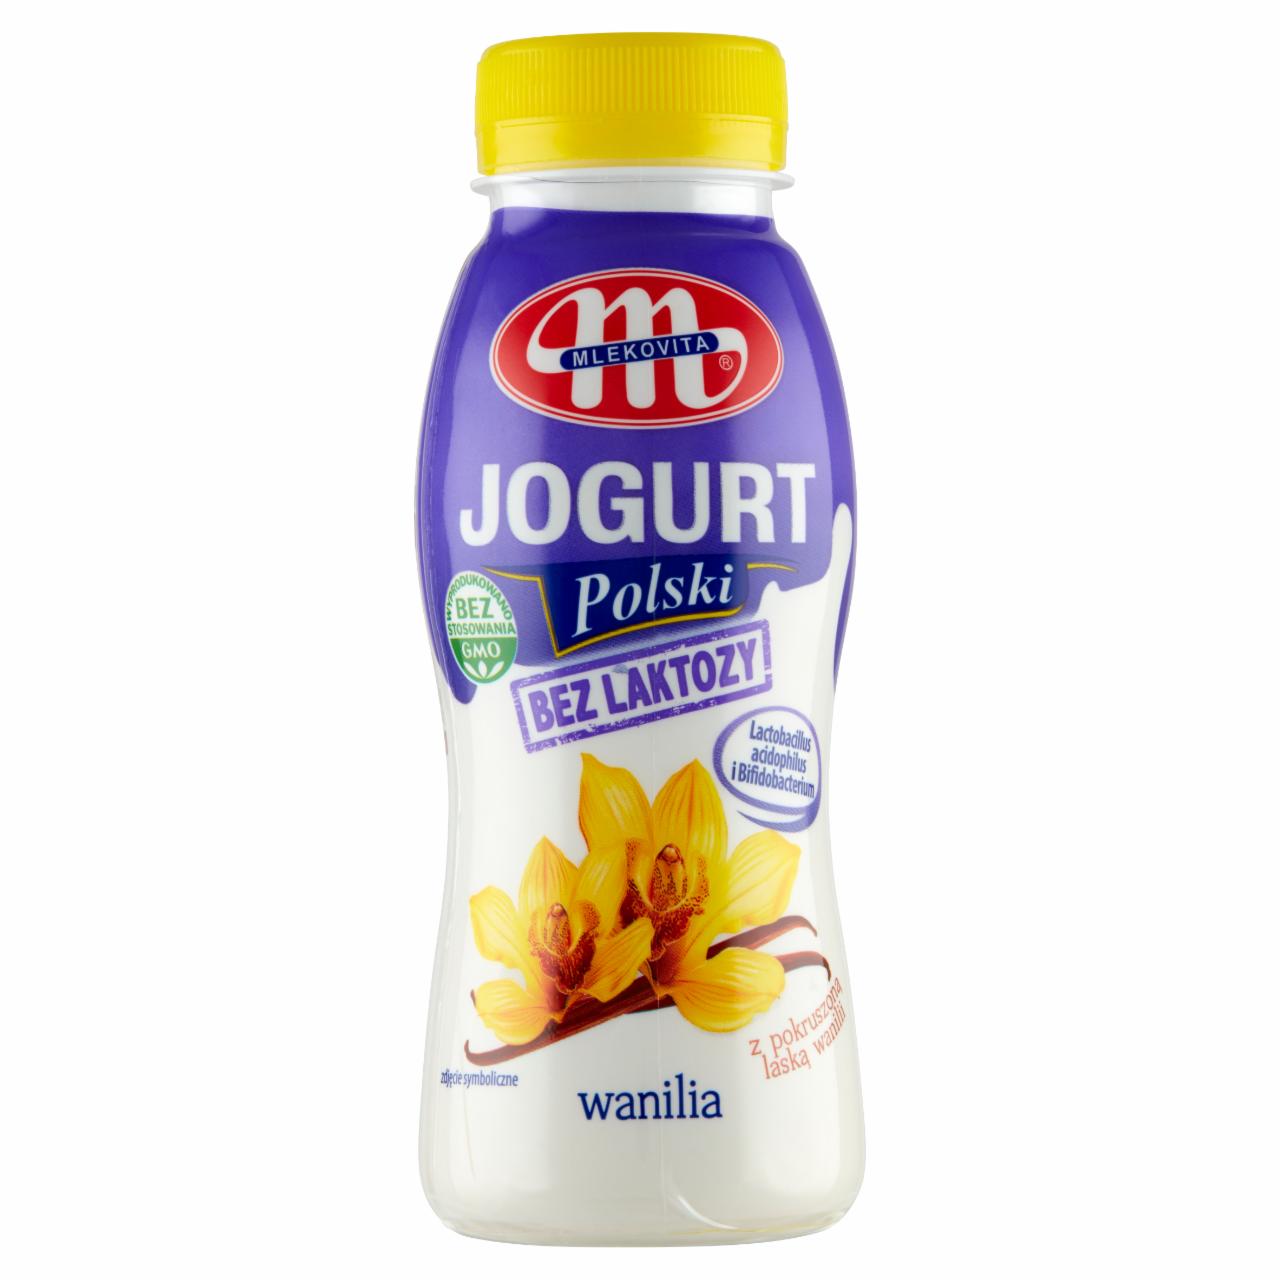 Zdjęcia - Mlekovita Jogurt Polski bez laktozy wanilia 250 g